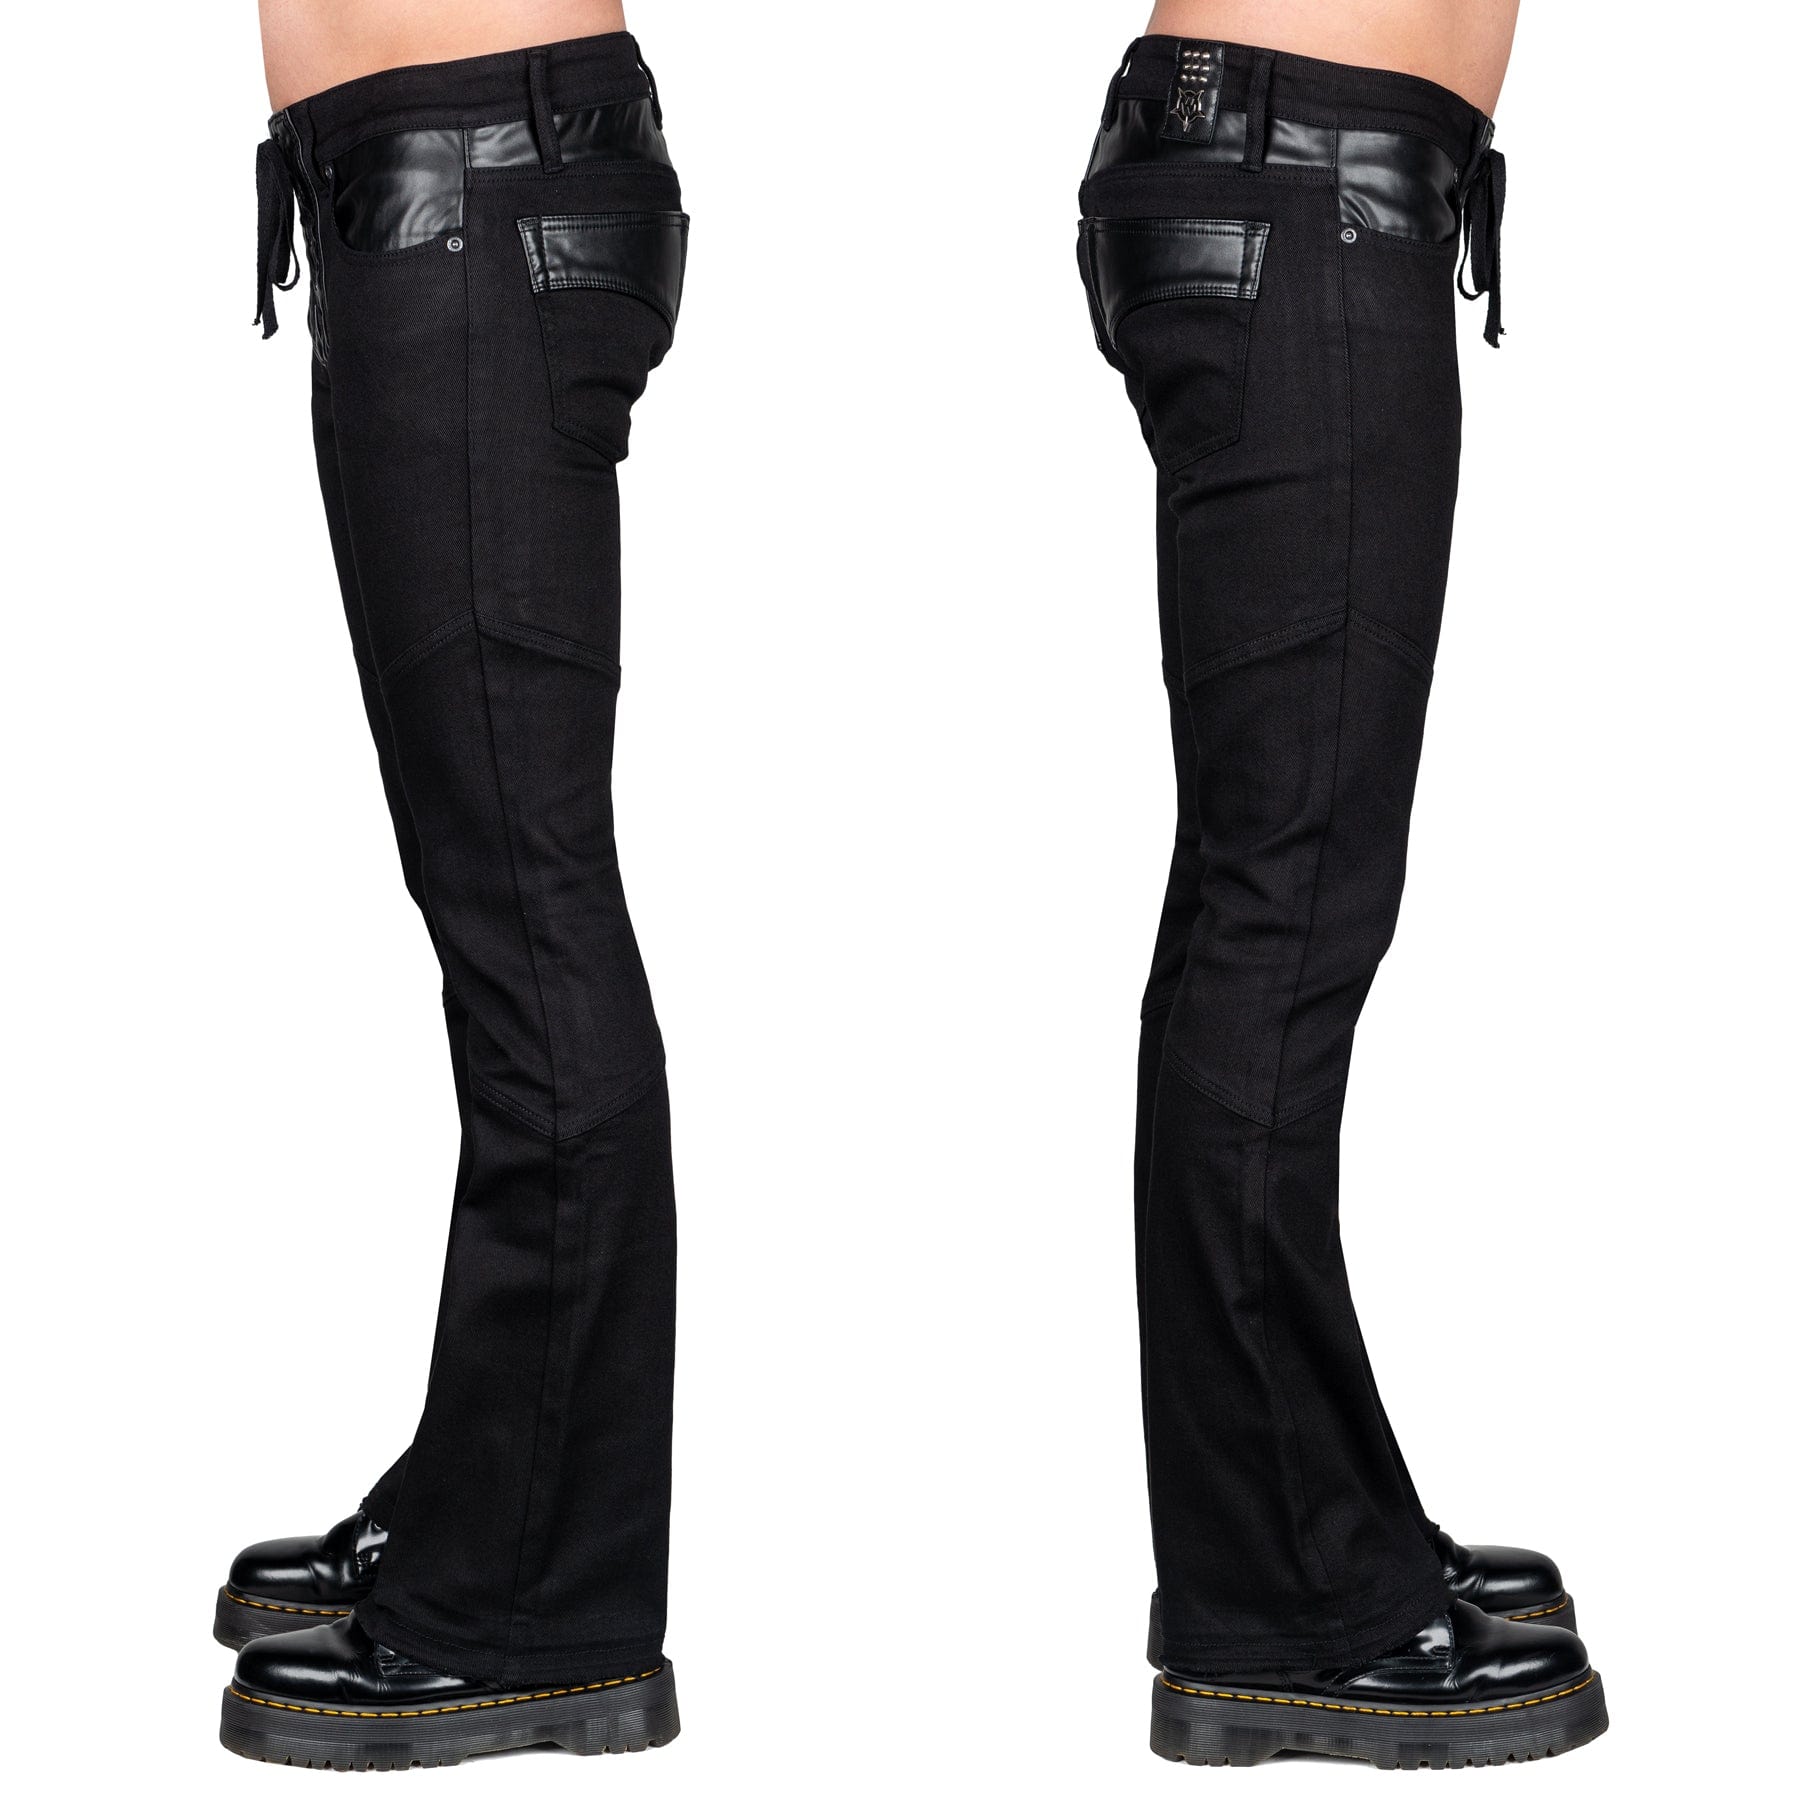 Wornstar Clothing Mens Jeans. Troubadour Denim Jeans - Black